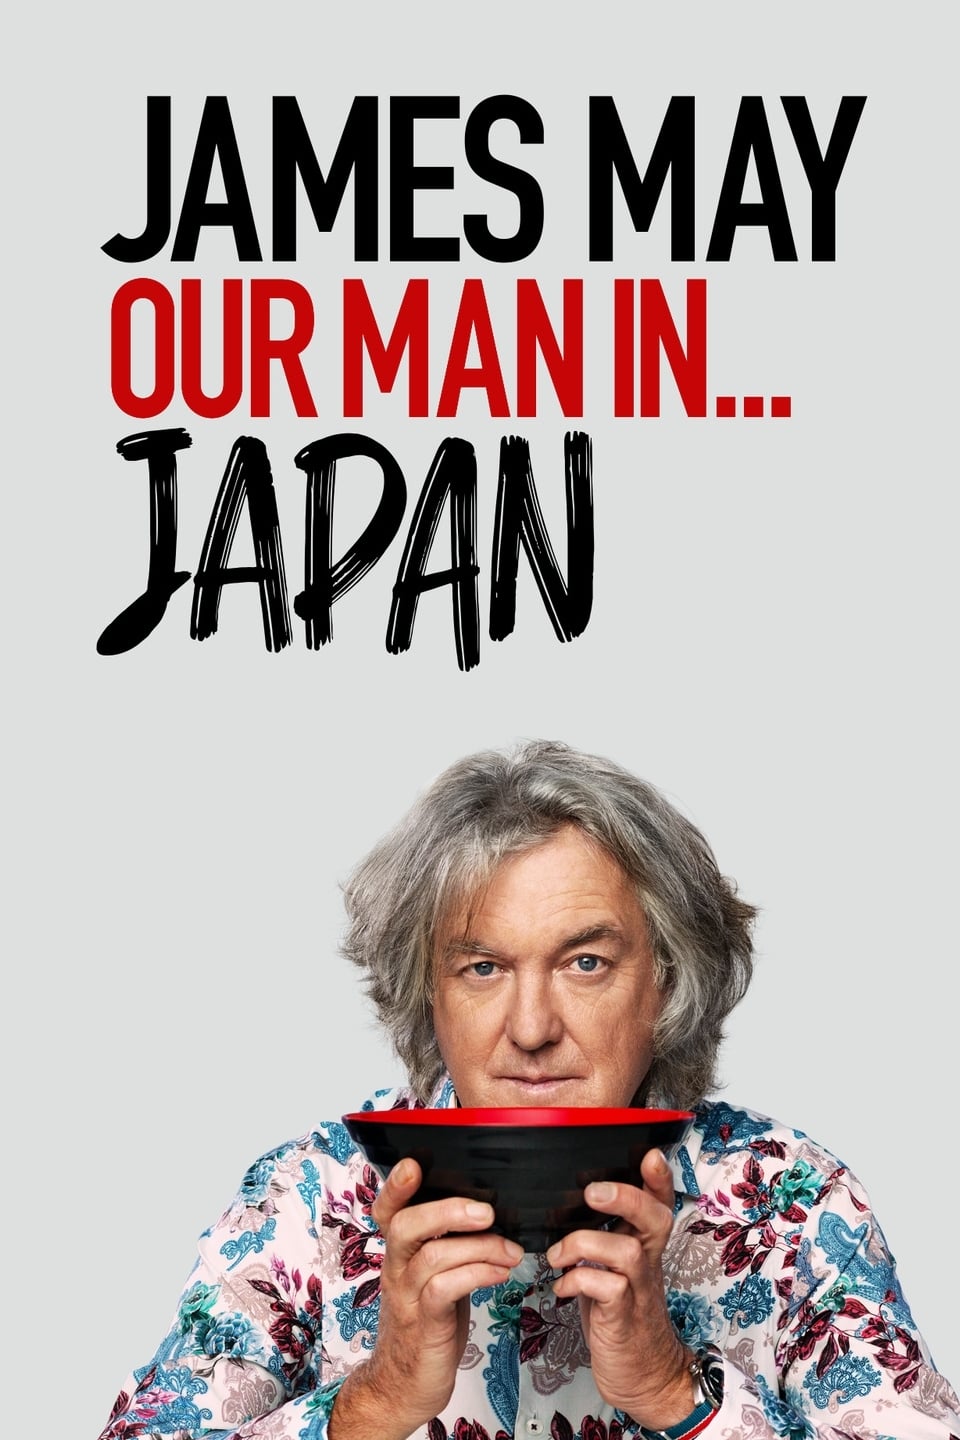 Caratula de JAMES MAY: OUR MAN IN JAPAN (James May: Nuestro hombre en Japon) 